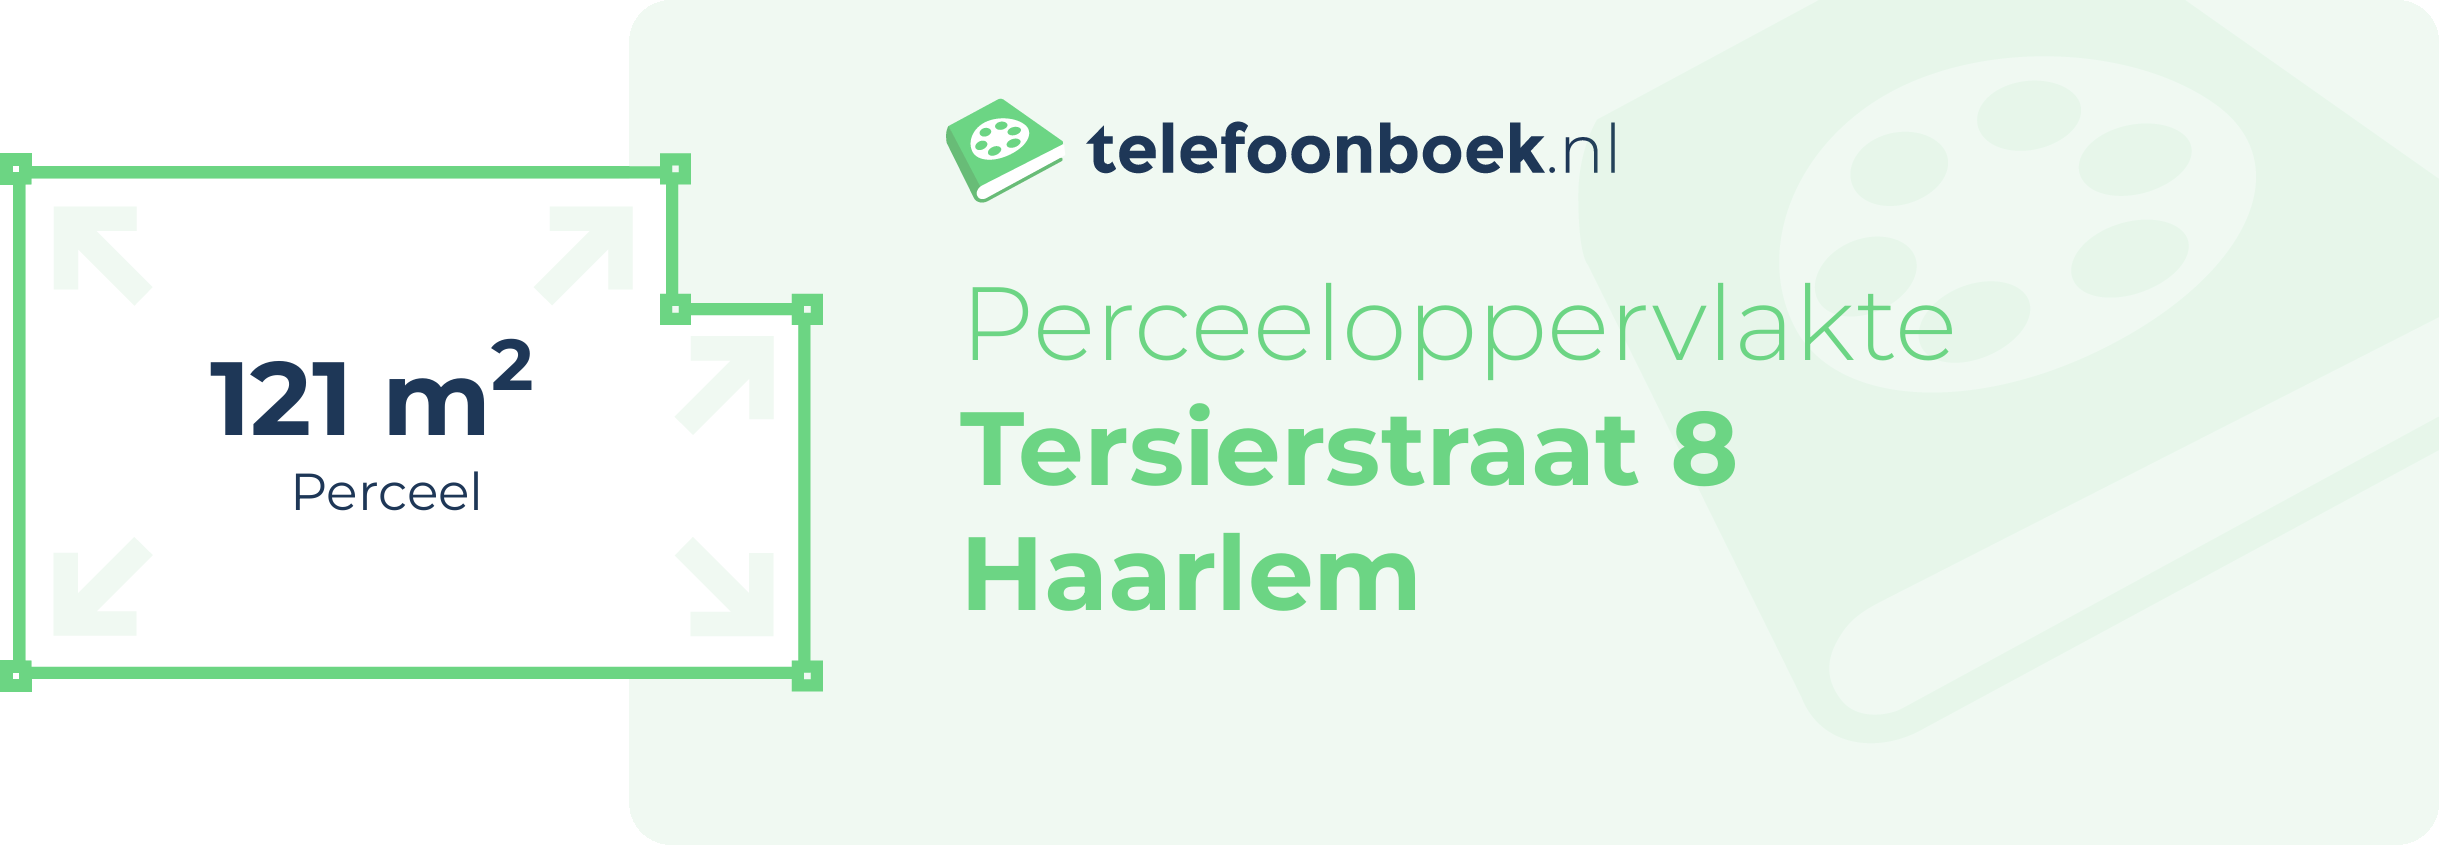 Perceeloppervlakte Tersierstraat 8 Haarlem